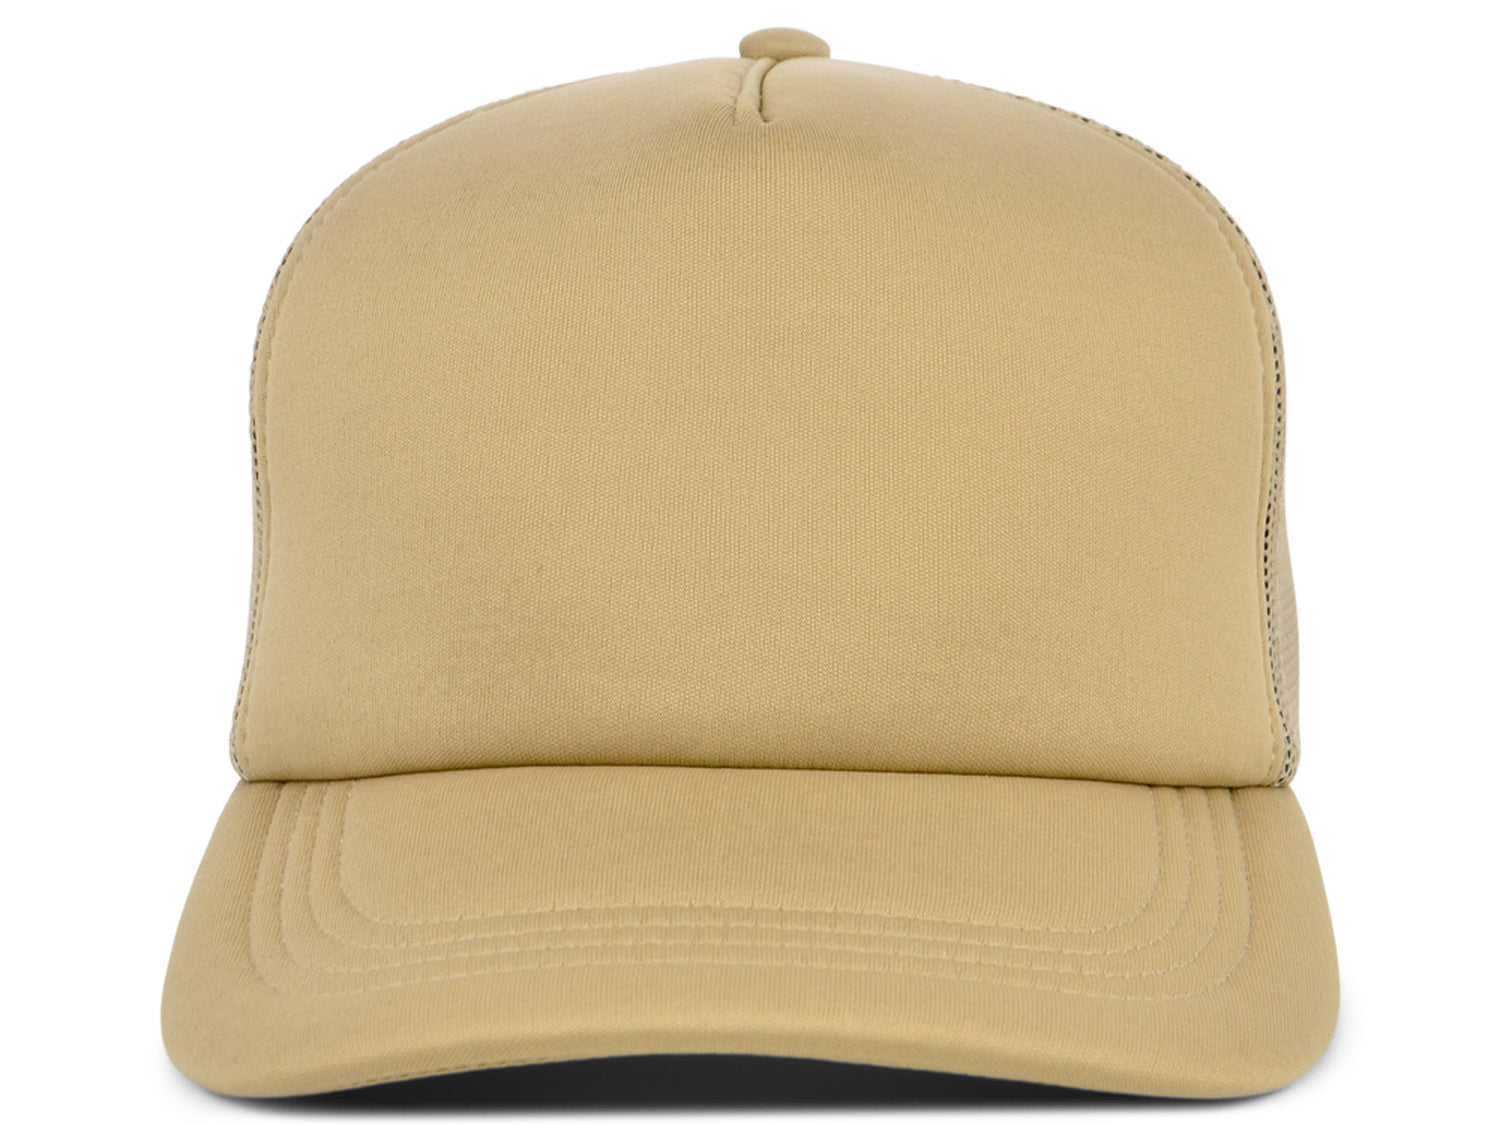 Blank Trucker Hat, WHITE FRONT YELLOW BACK, Trucker Hat